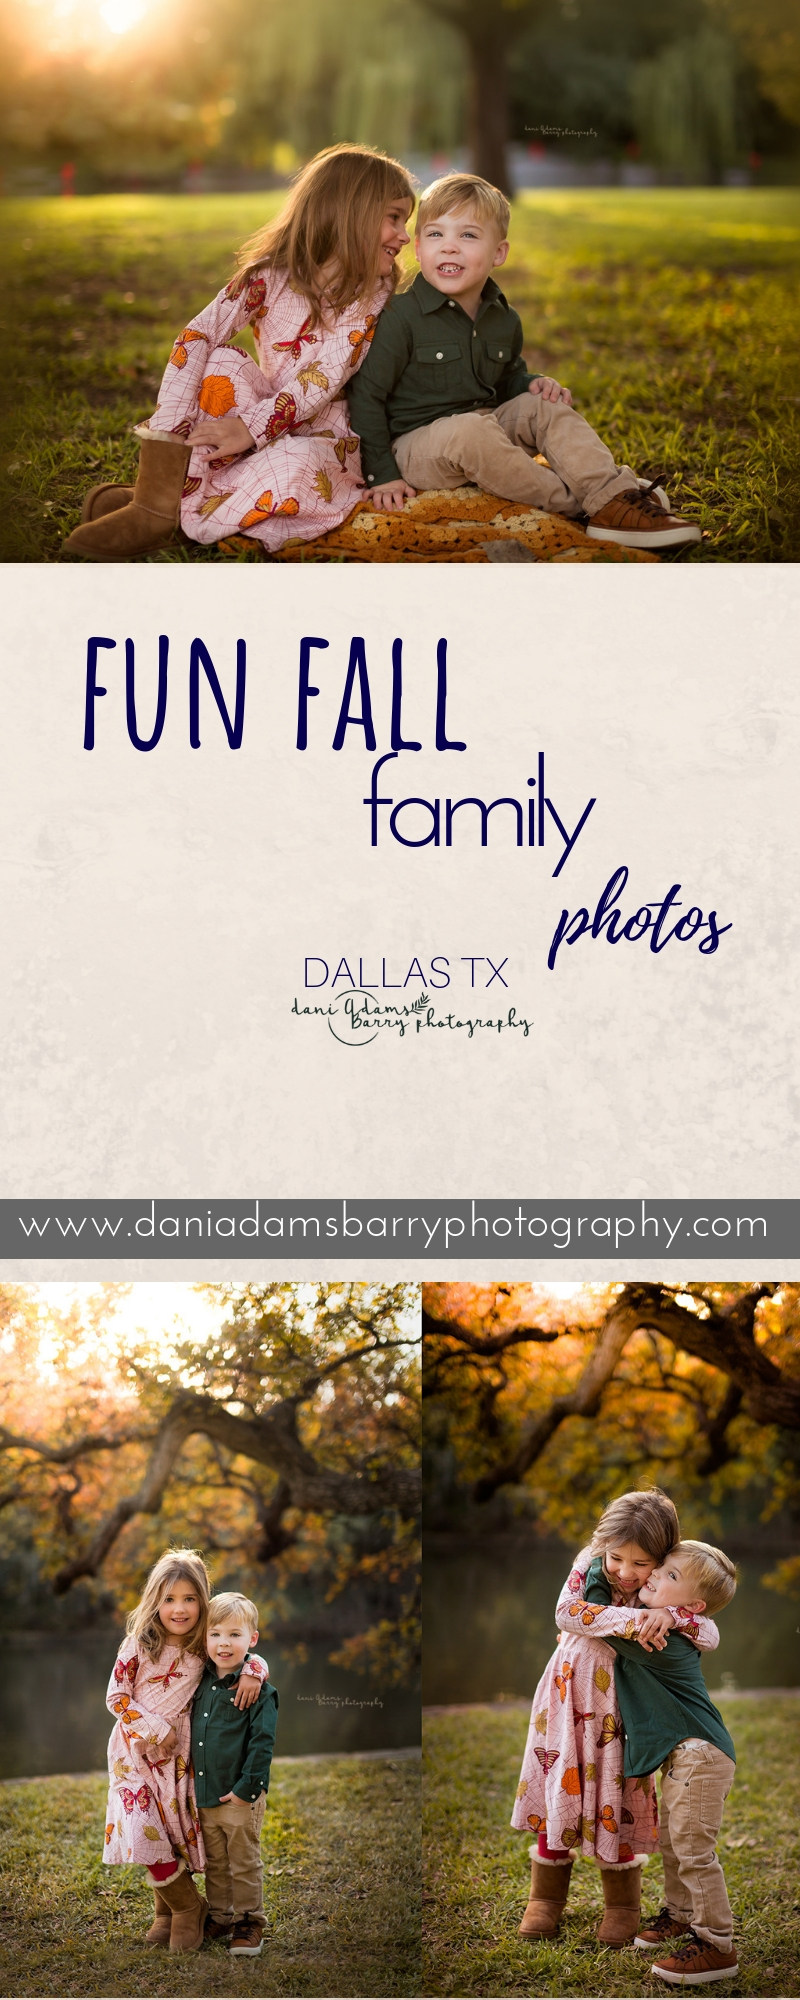 Fun Fall Family Photos - Family Photography Dallas TX- Lakeside Park - Dani Adams Barry Photography